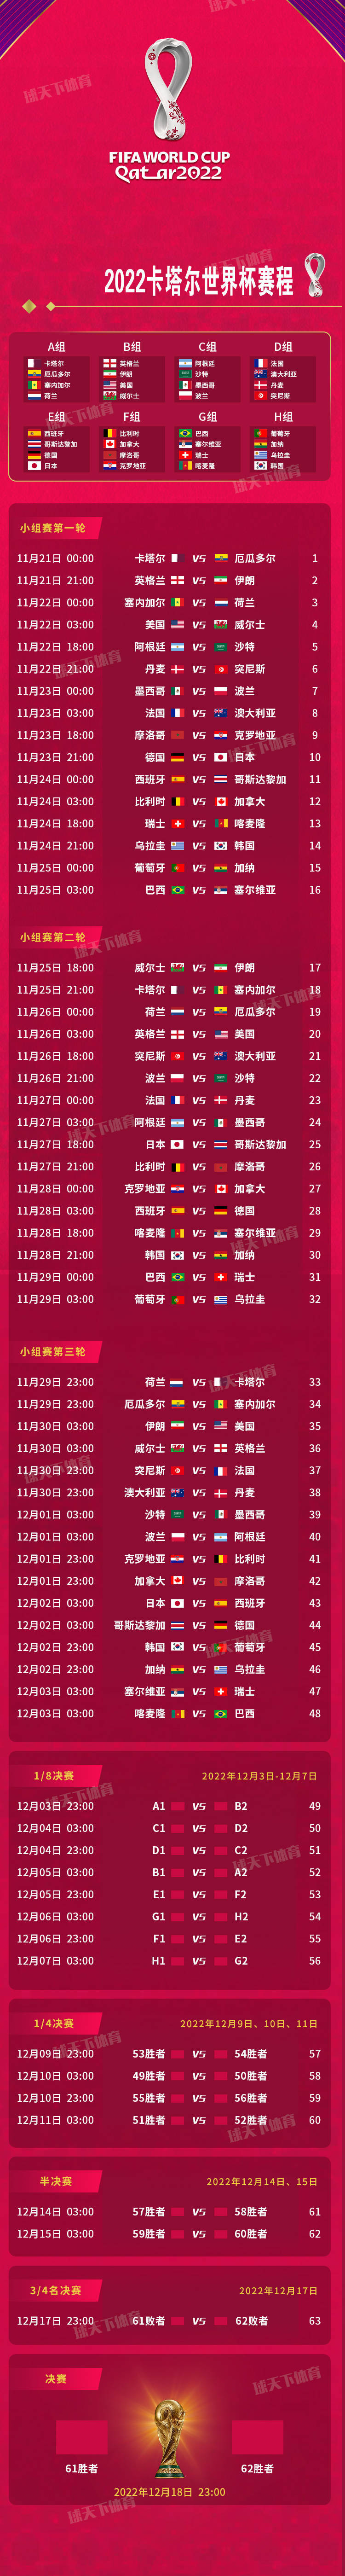 世界杯2022赛程时间表(2022年卡塔尔世界杯完整赛程时间表)